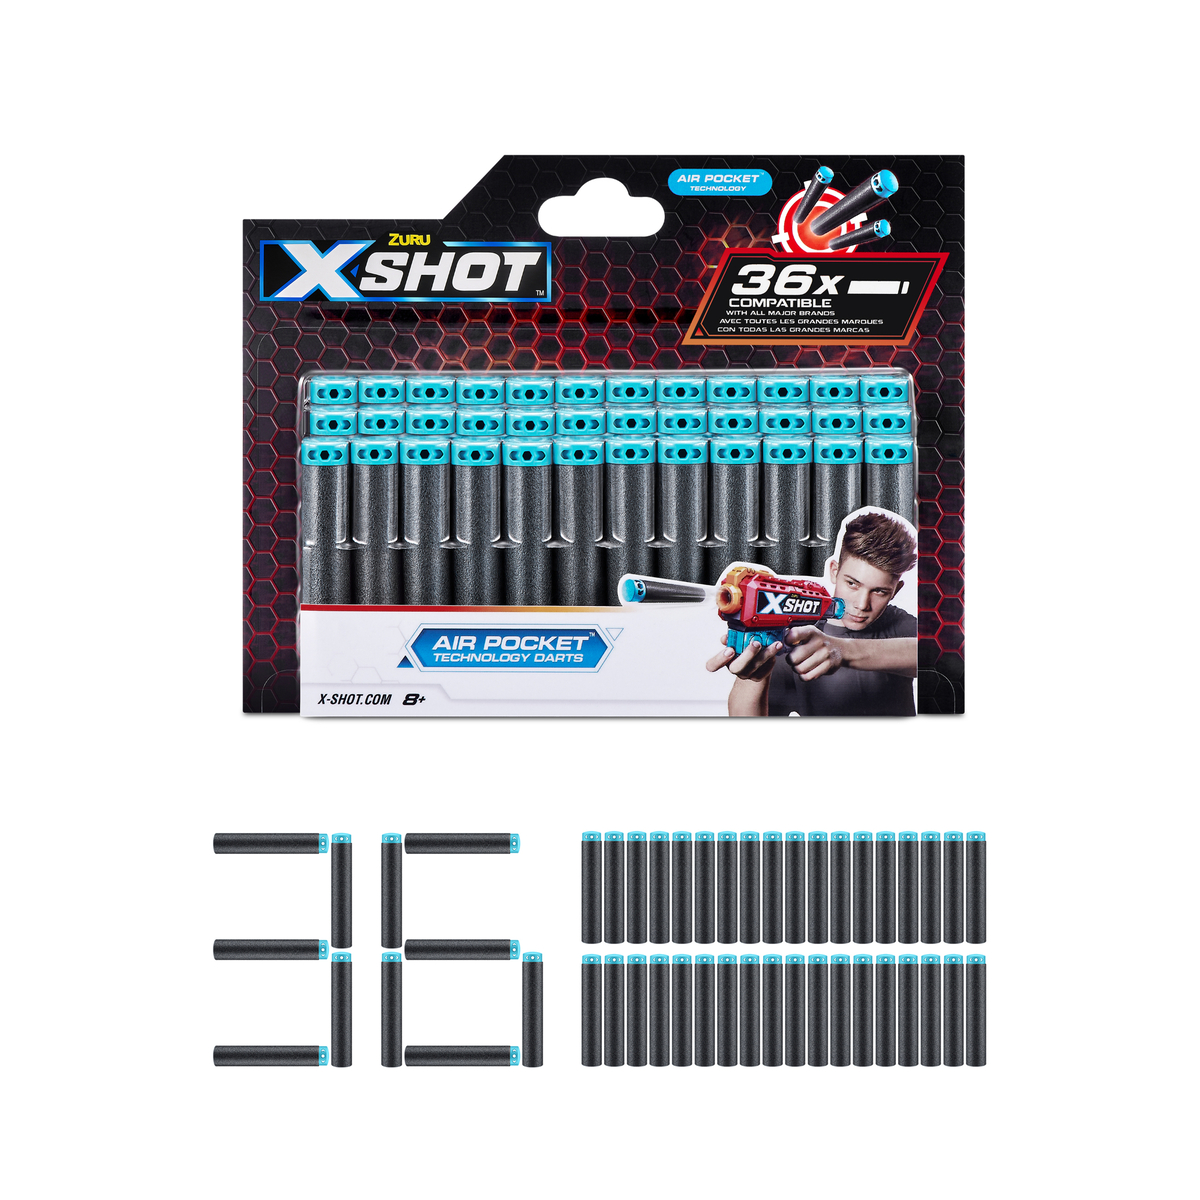 X-Shot Excel Foam Dart Blaster Refill, 36 Darts, XS-3618-A